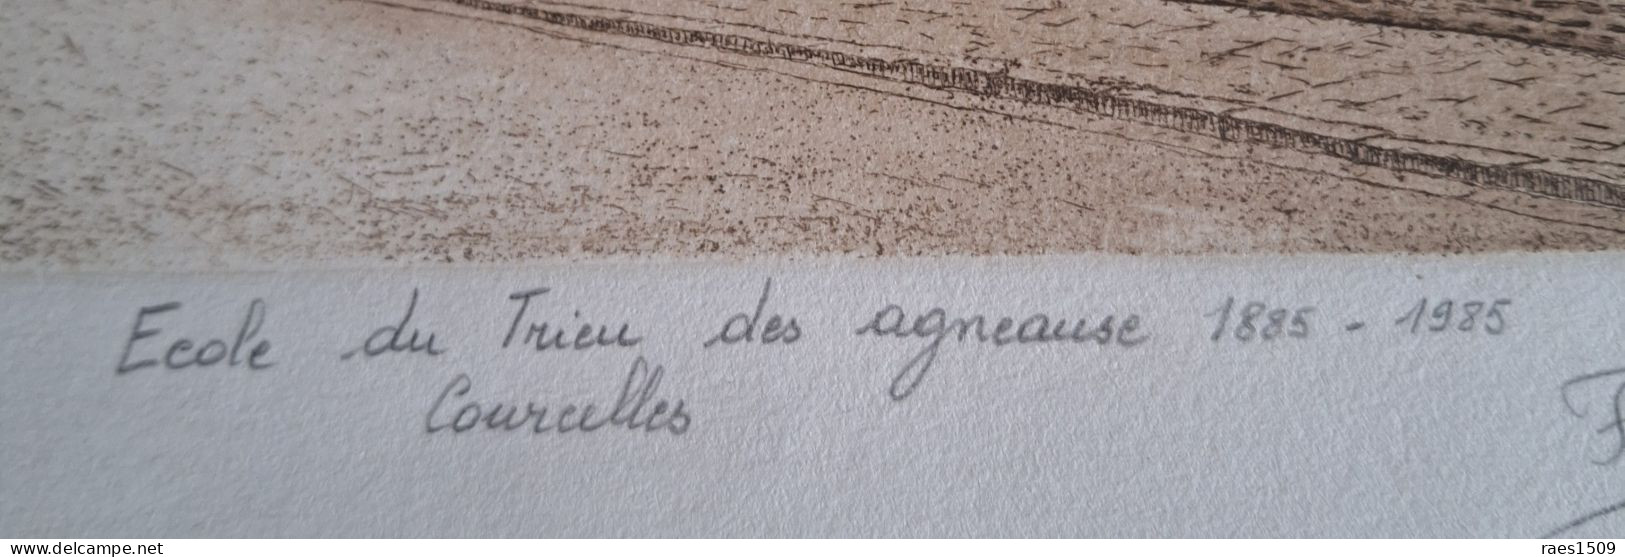 Eau Forte De L'école Du Trieu Des Agneaux De Courcelles  1885-1985 Signer Par L'auteur Et N°48/100 - Collections